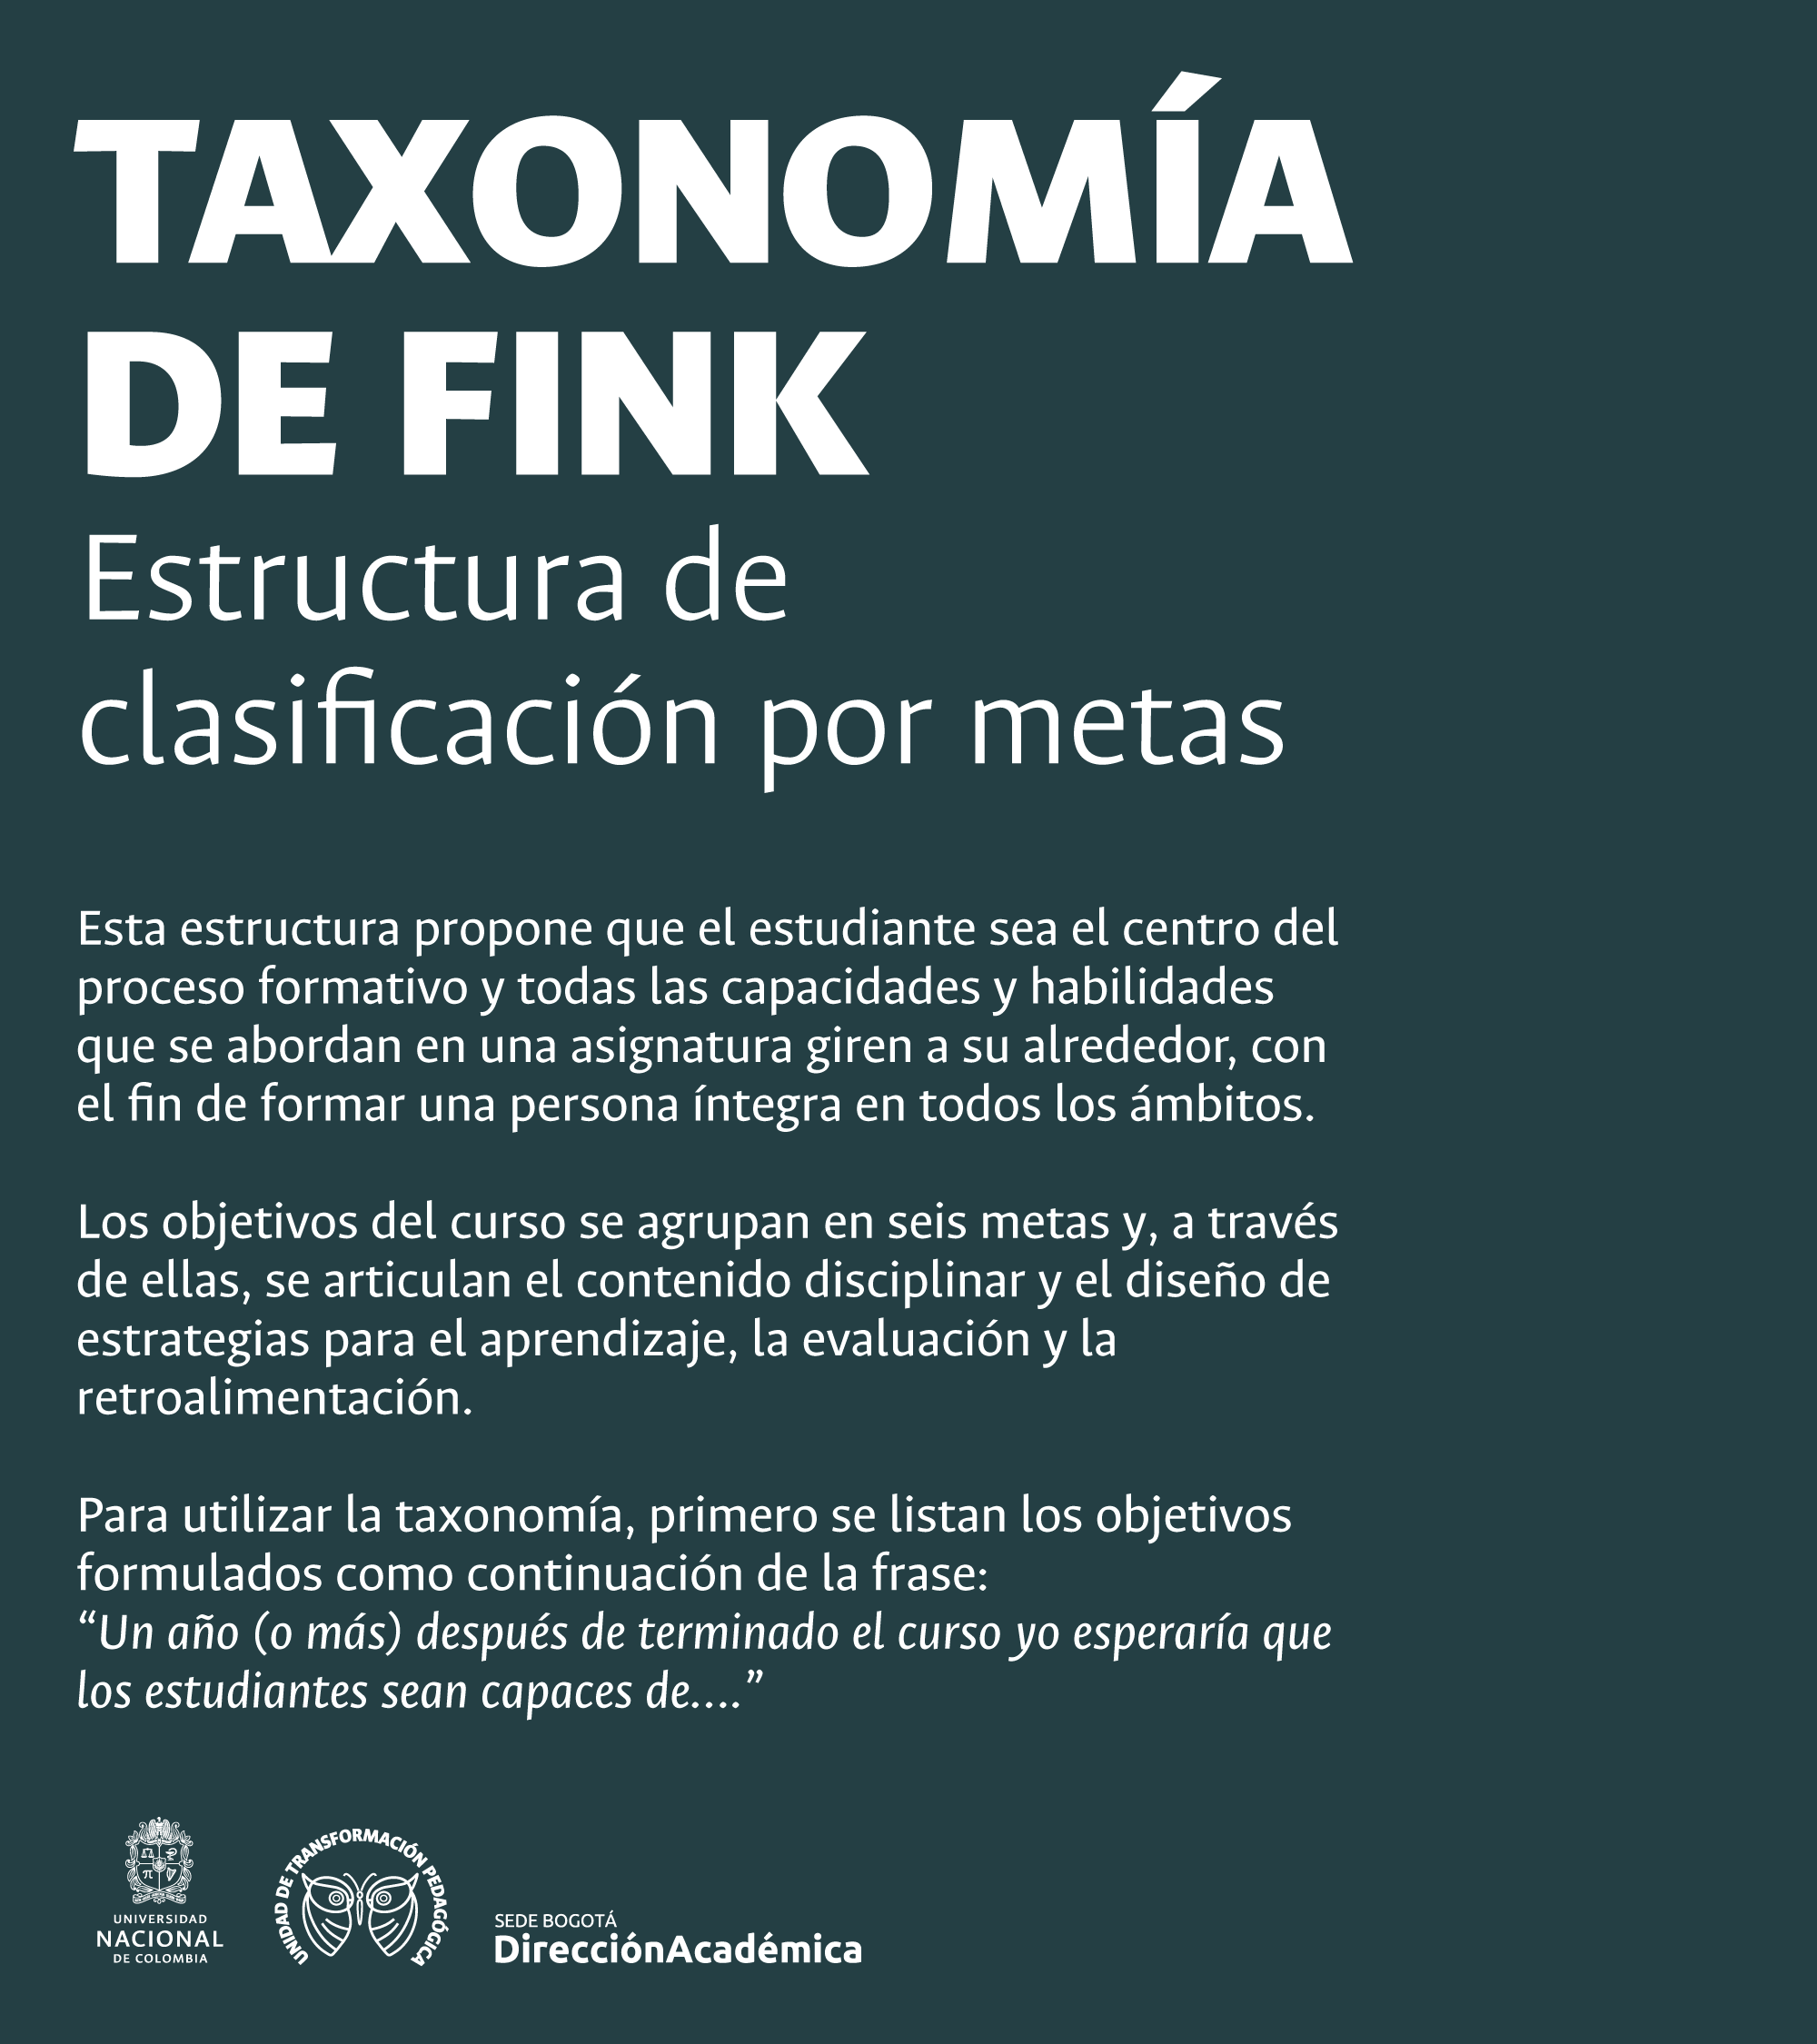 Taxonomia-Fink-1